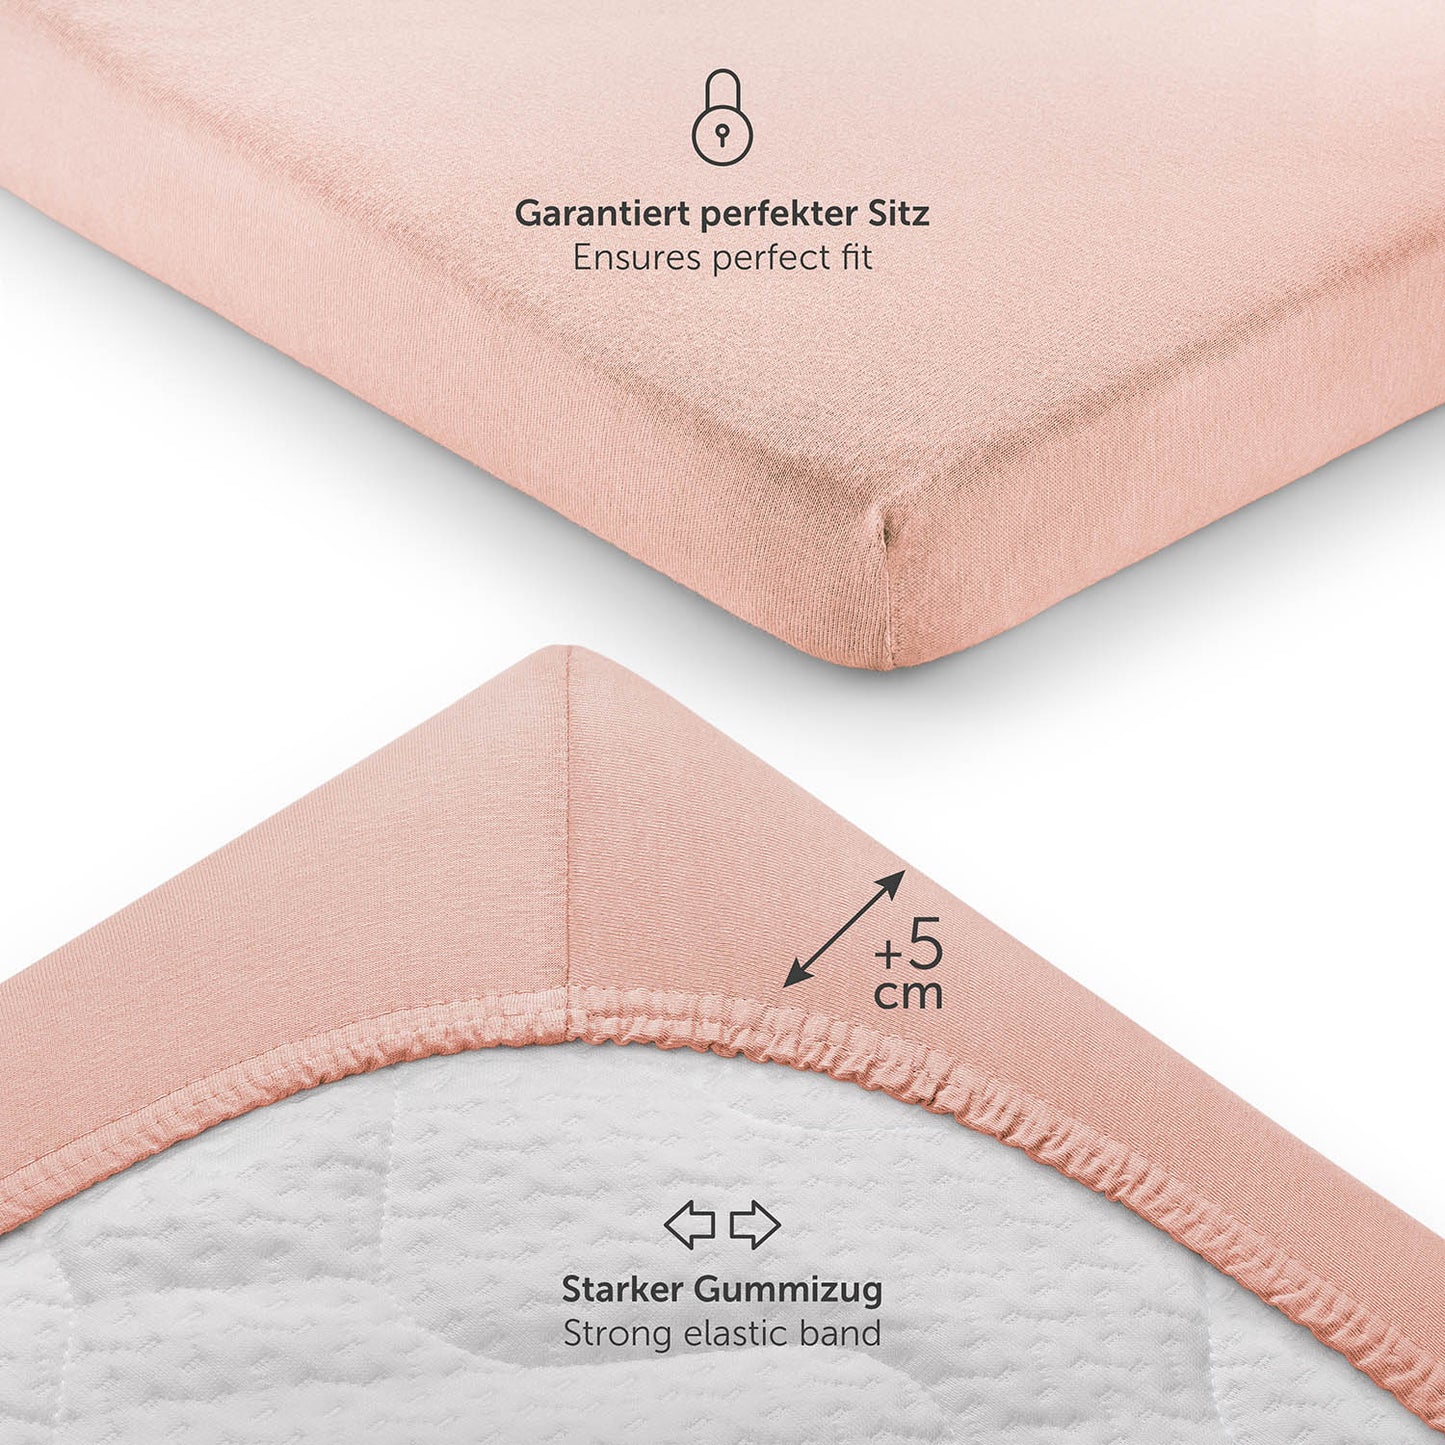 Detailansicht eines rosefarbenen Spannbettlakens das einen starken Gummizug und zusätzliche 5 cm Stoff für eine perfekte Passform zeigt.